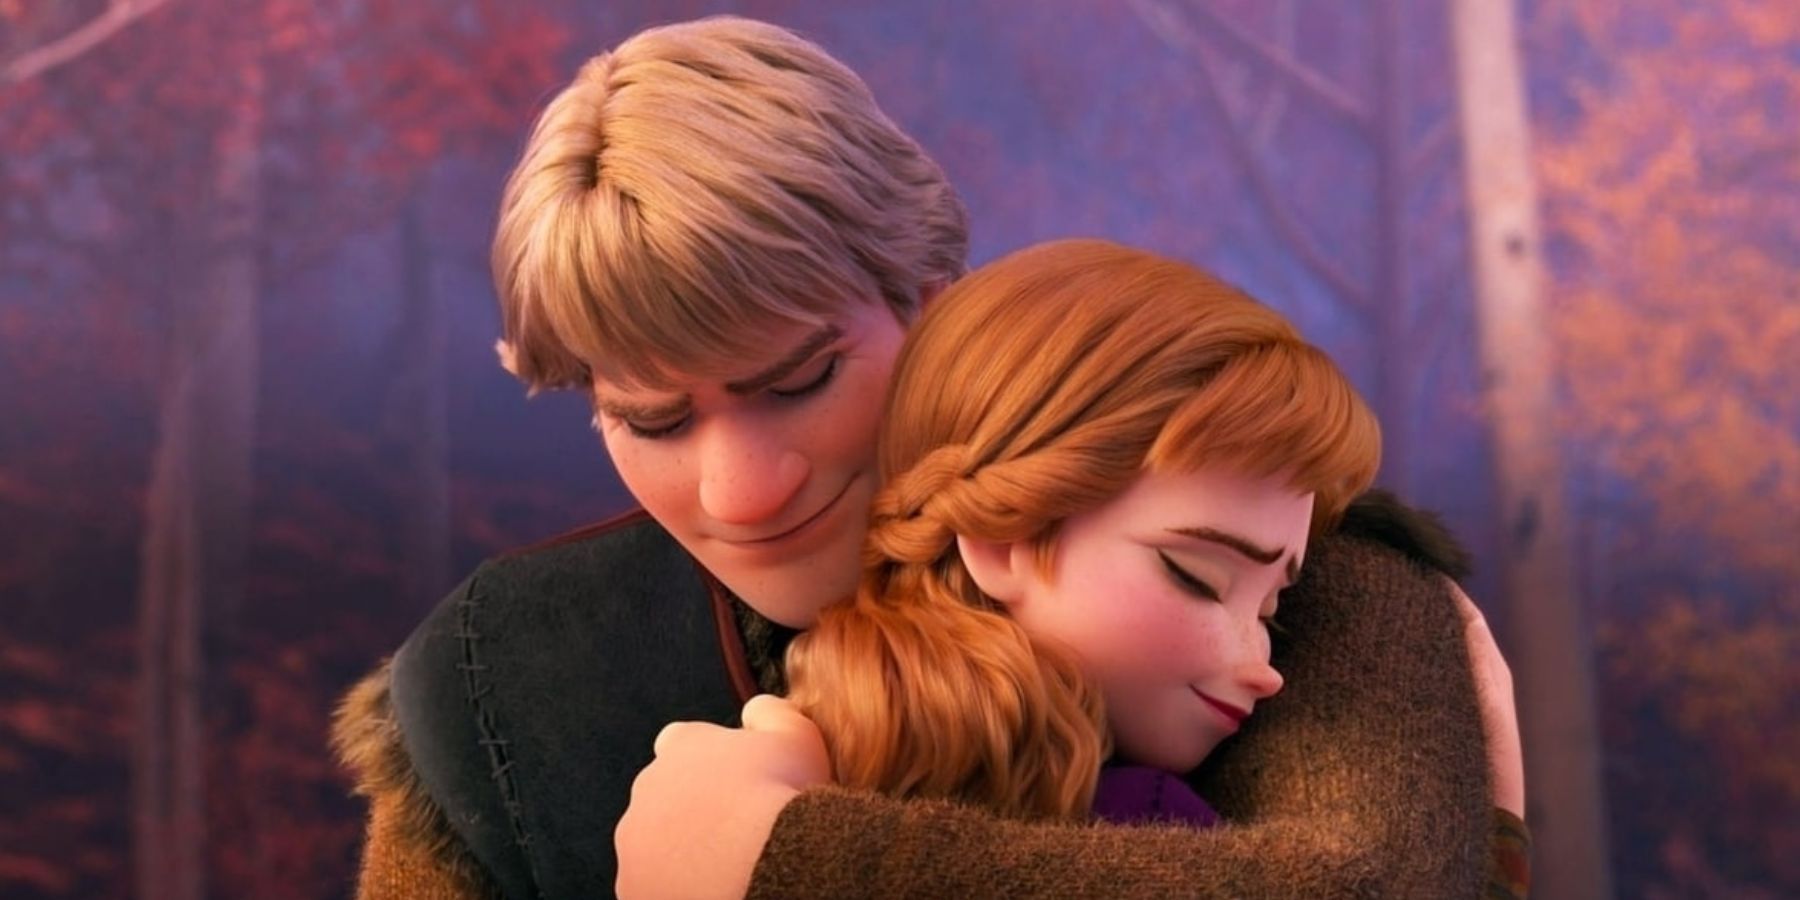 Los actores de voz Anna y Kristoff de Frozen se reúnen en una nueva imagen mientras continúa la espera por Frozen 3